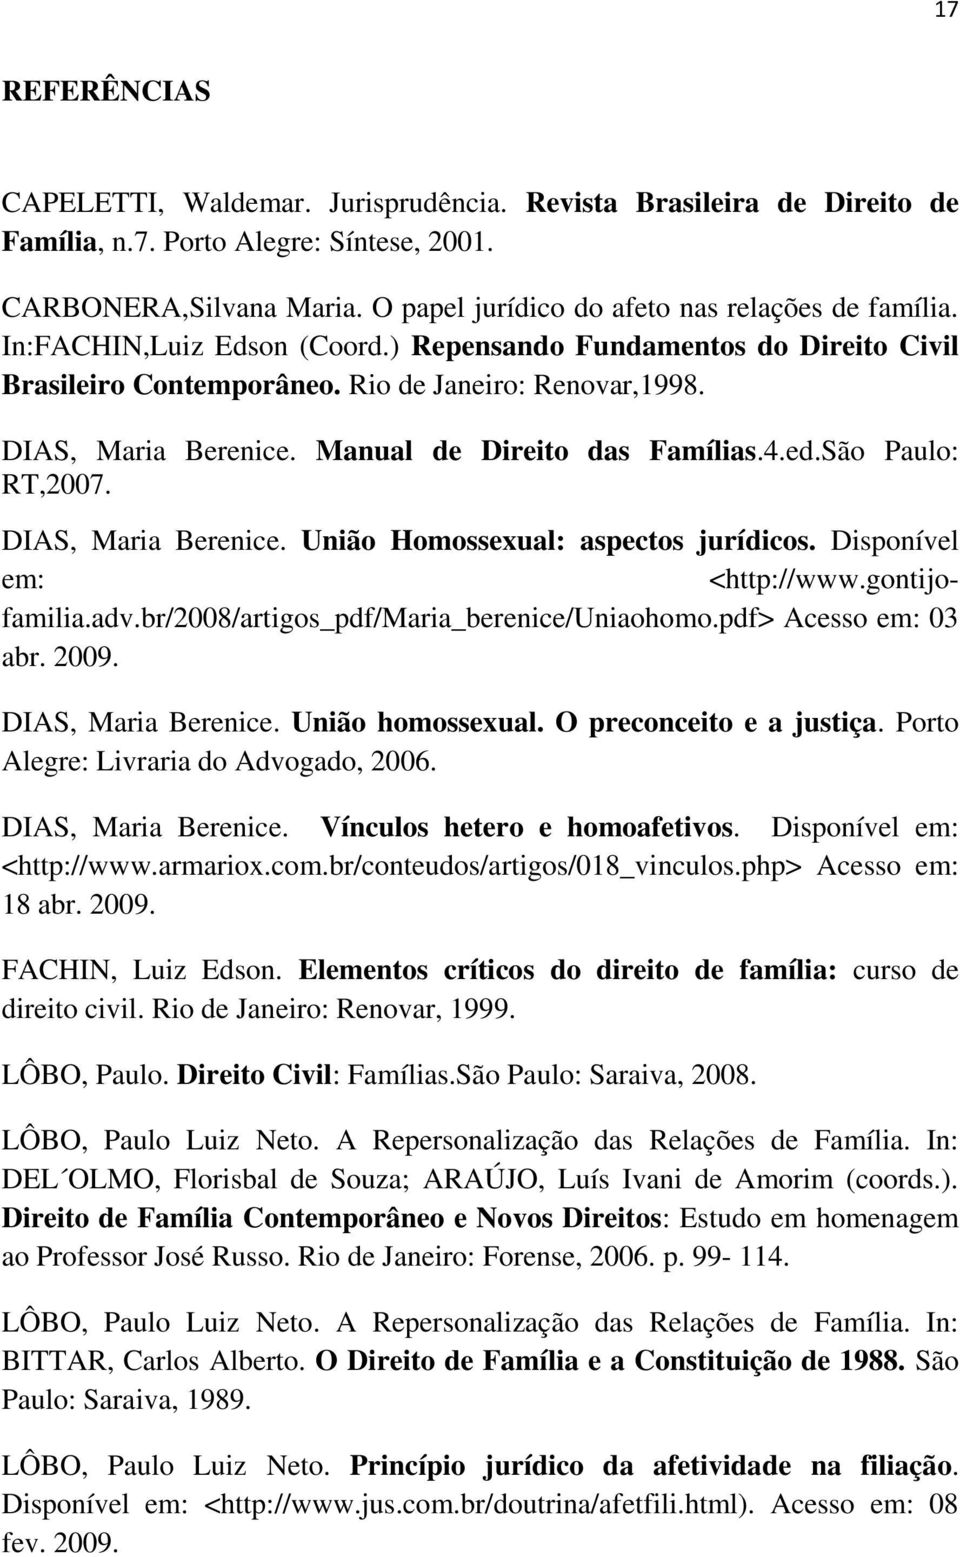 Manual de Direito das Famílias.4.ed.São Paulo: RT,2007. DIAS, Maria Berenice. União Homossexual: aspectos jurídicos. Disponível em: <http://www.gontijofamilia.adv.